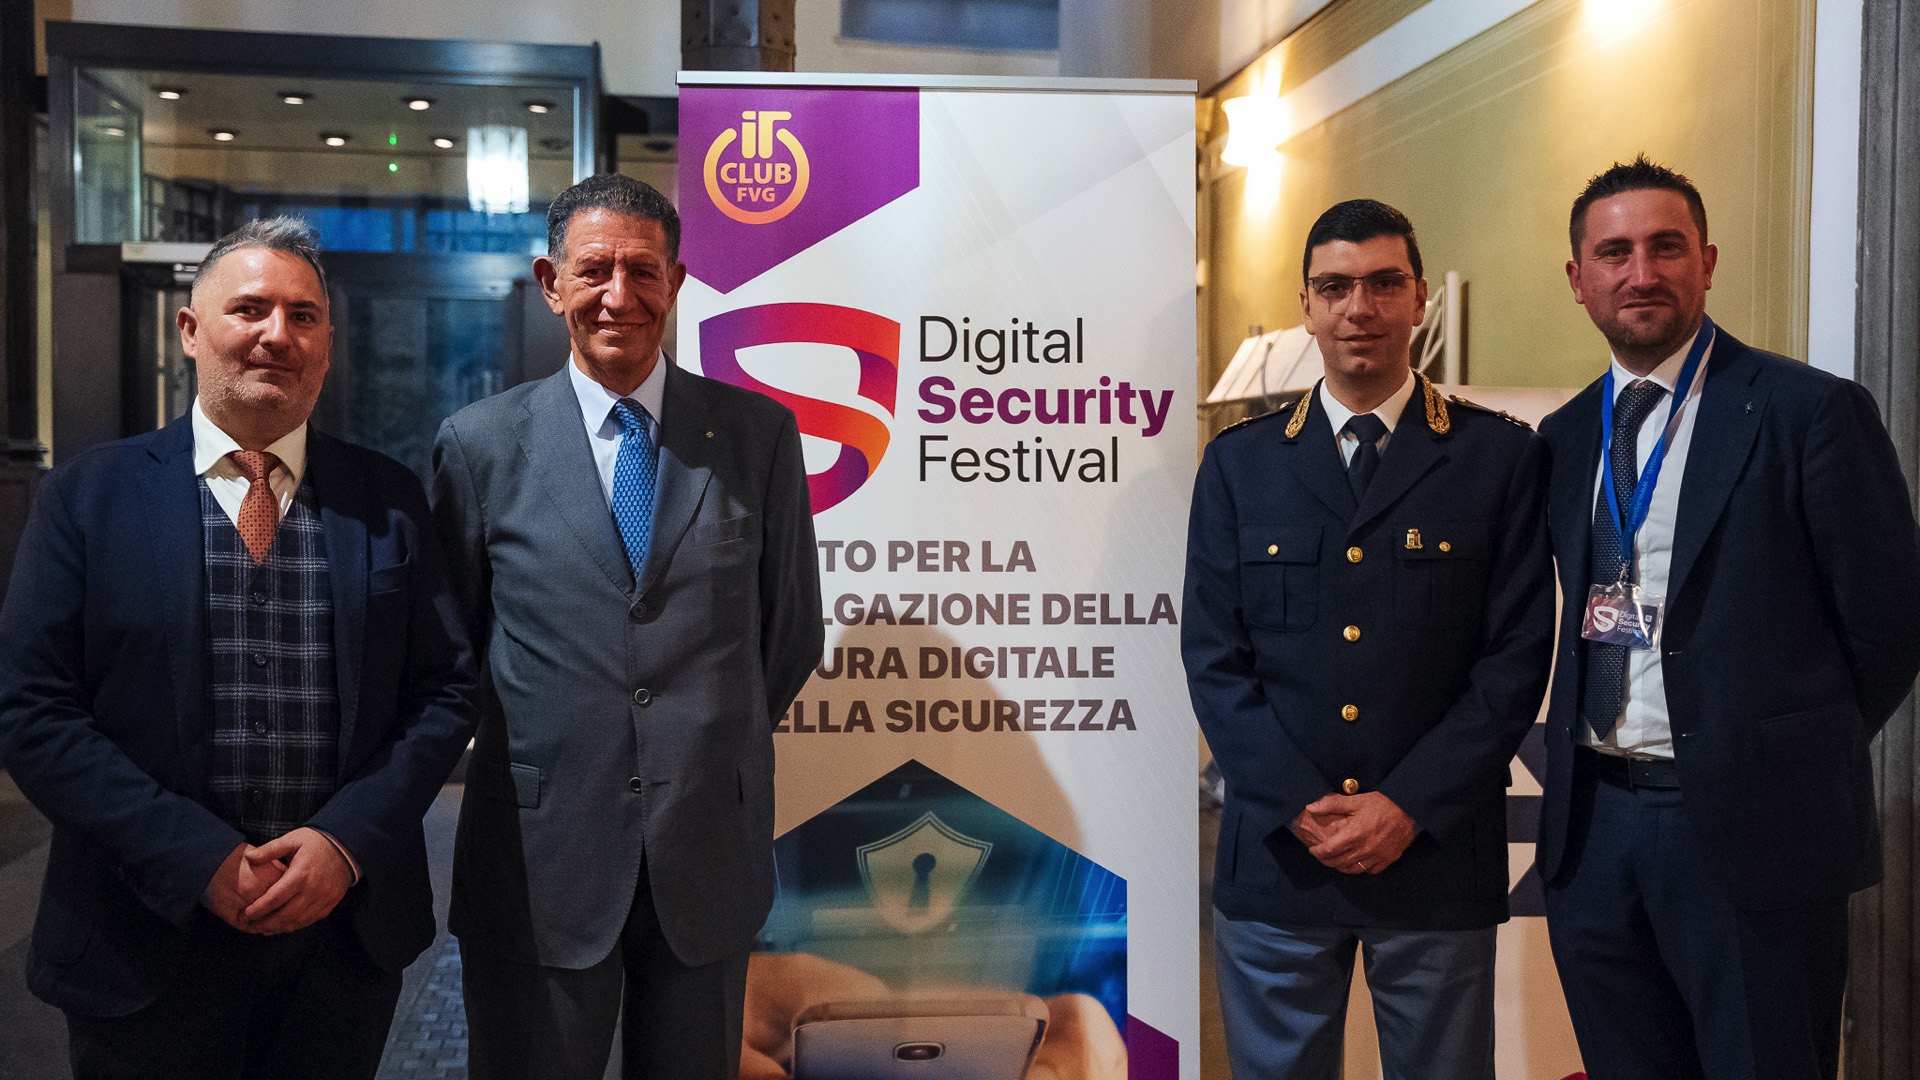 Digital Security Festival, patrocinato da Italiamac, chiude una edizione da record 14